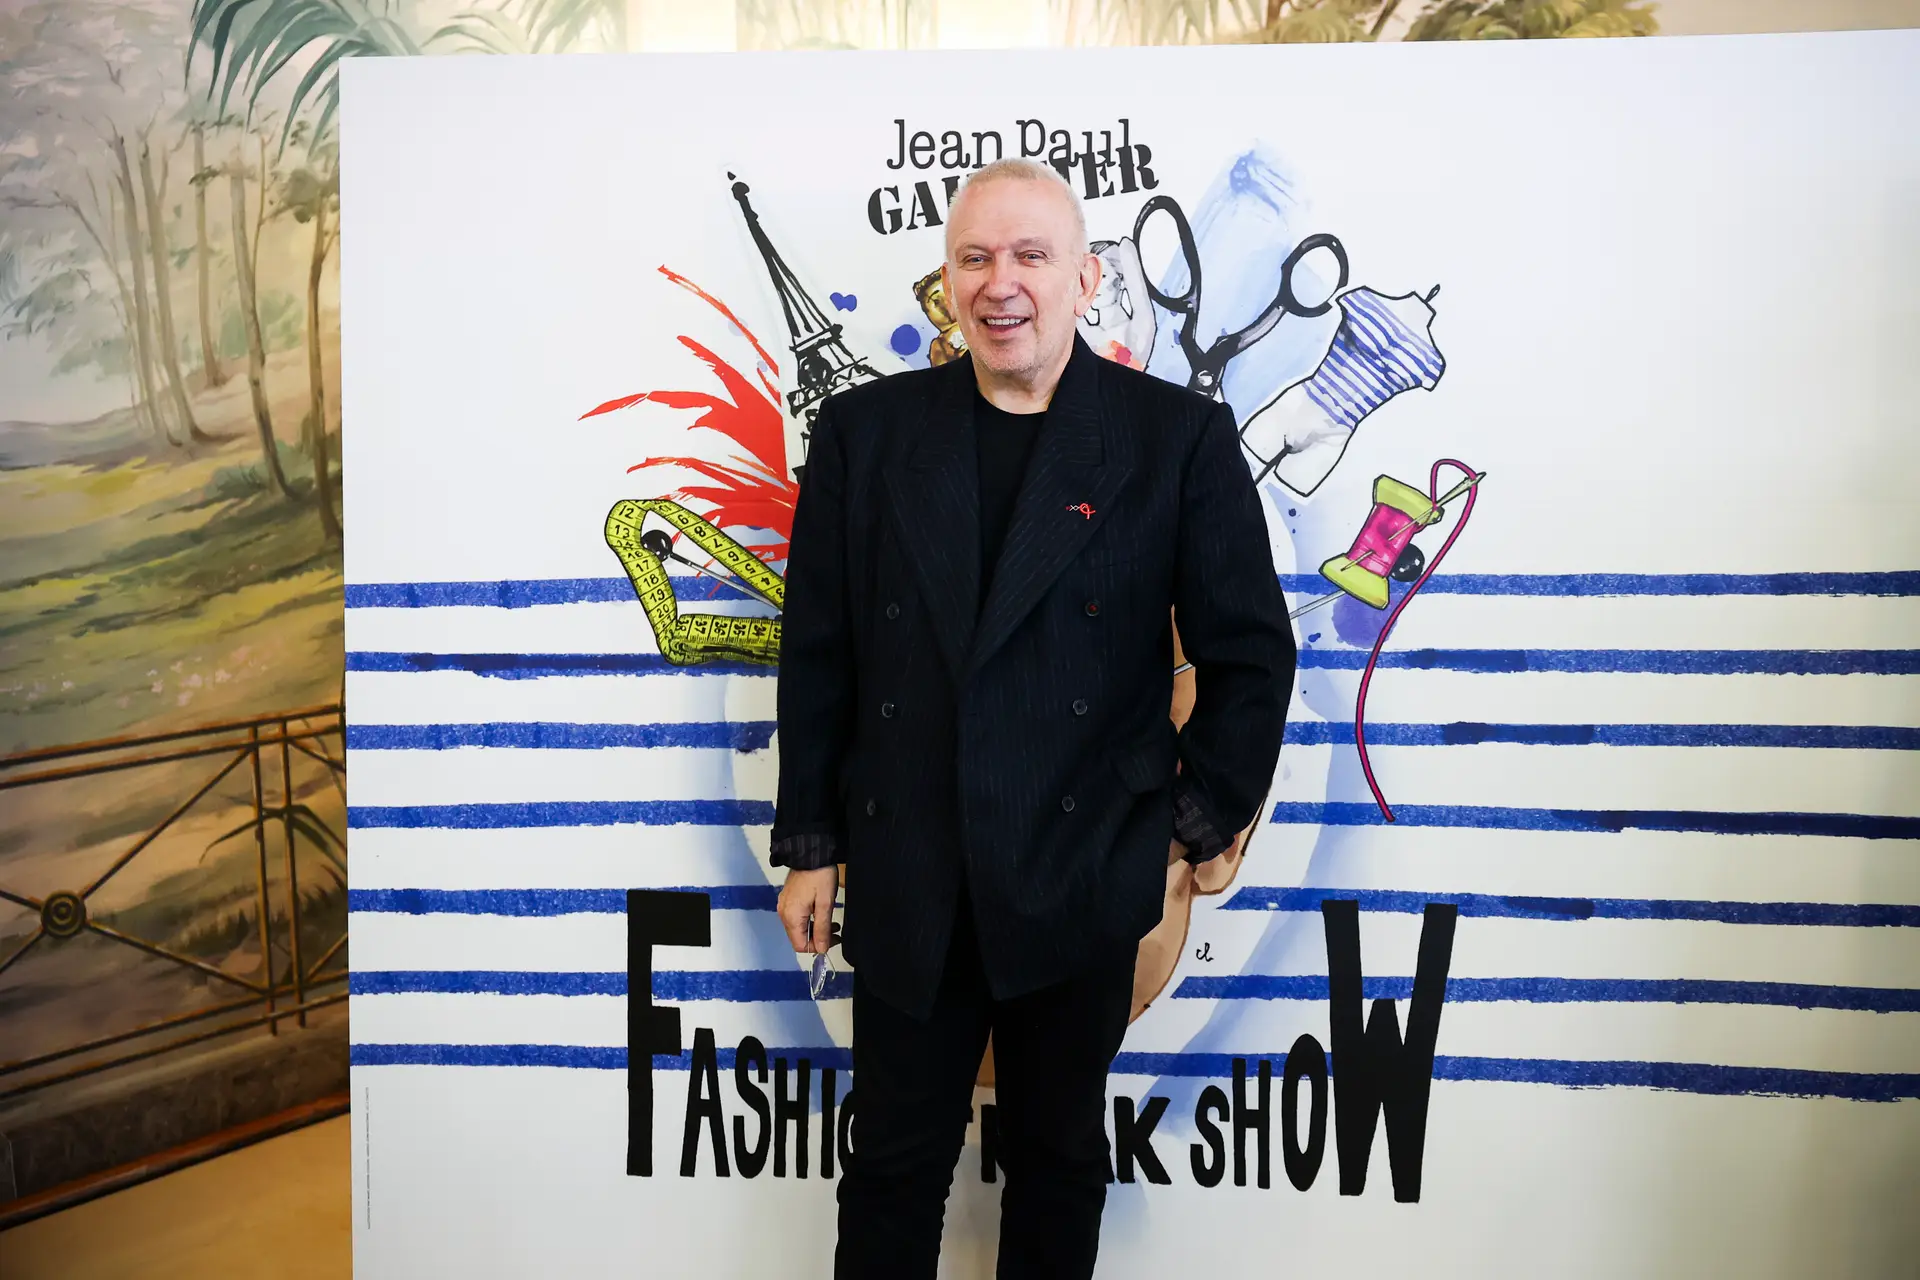 Caras  Jean Paul Gaultier apresenta em Lisboa um espetáculo que percorre  os seus 50 anos de carreira